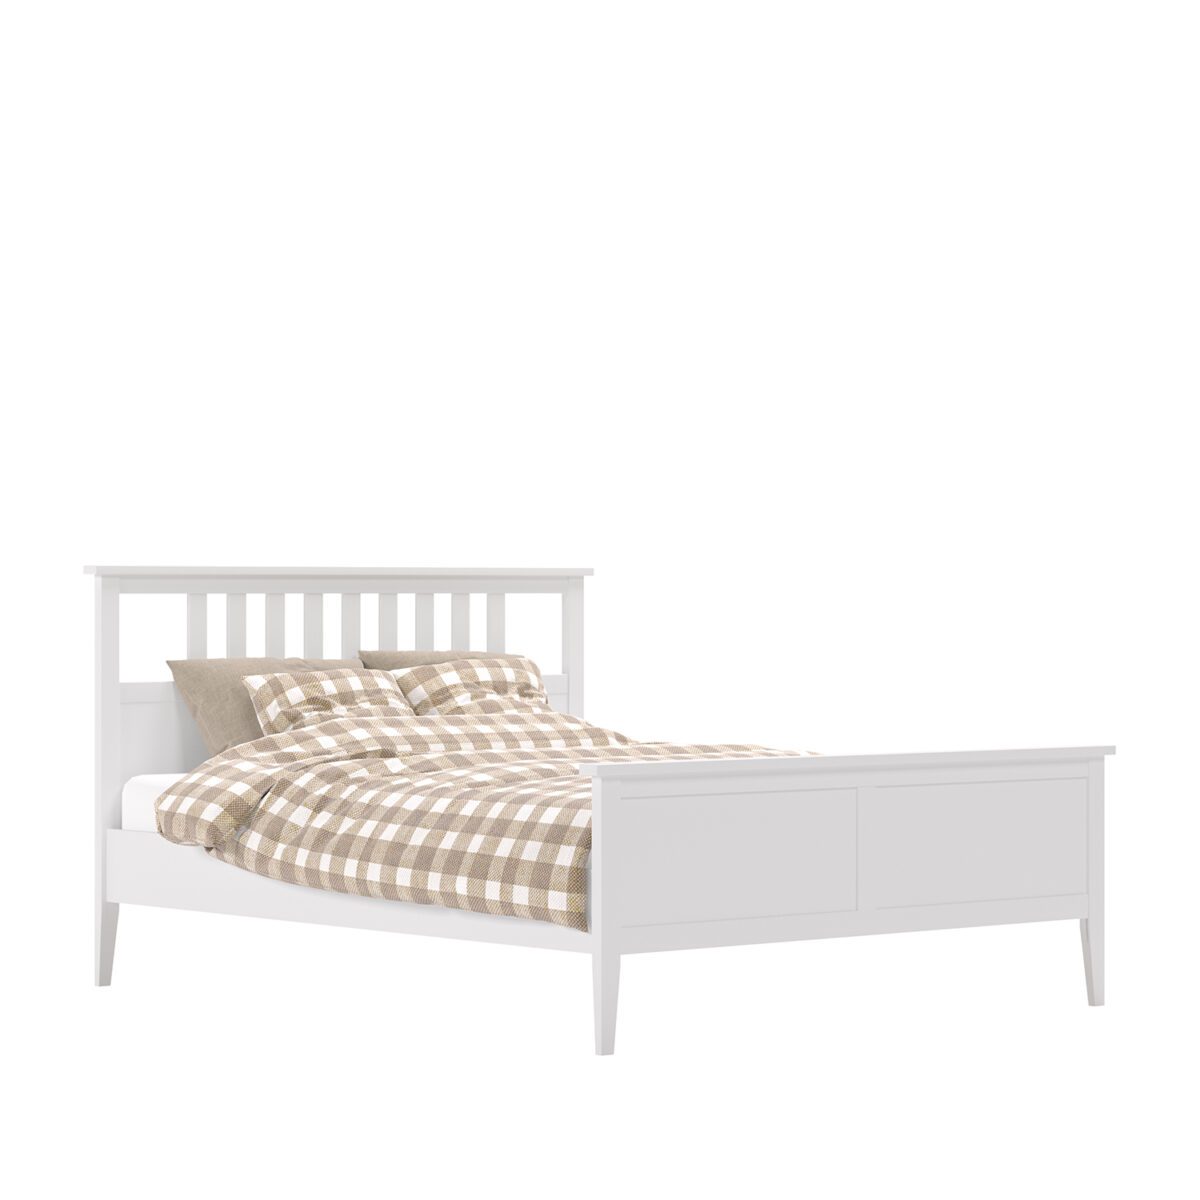 Комплект Кровать Leset Мира 160х200 + основание кровати с лентой "Мира" (160х200)